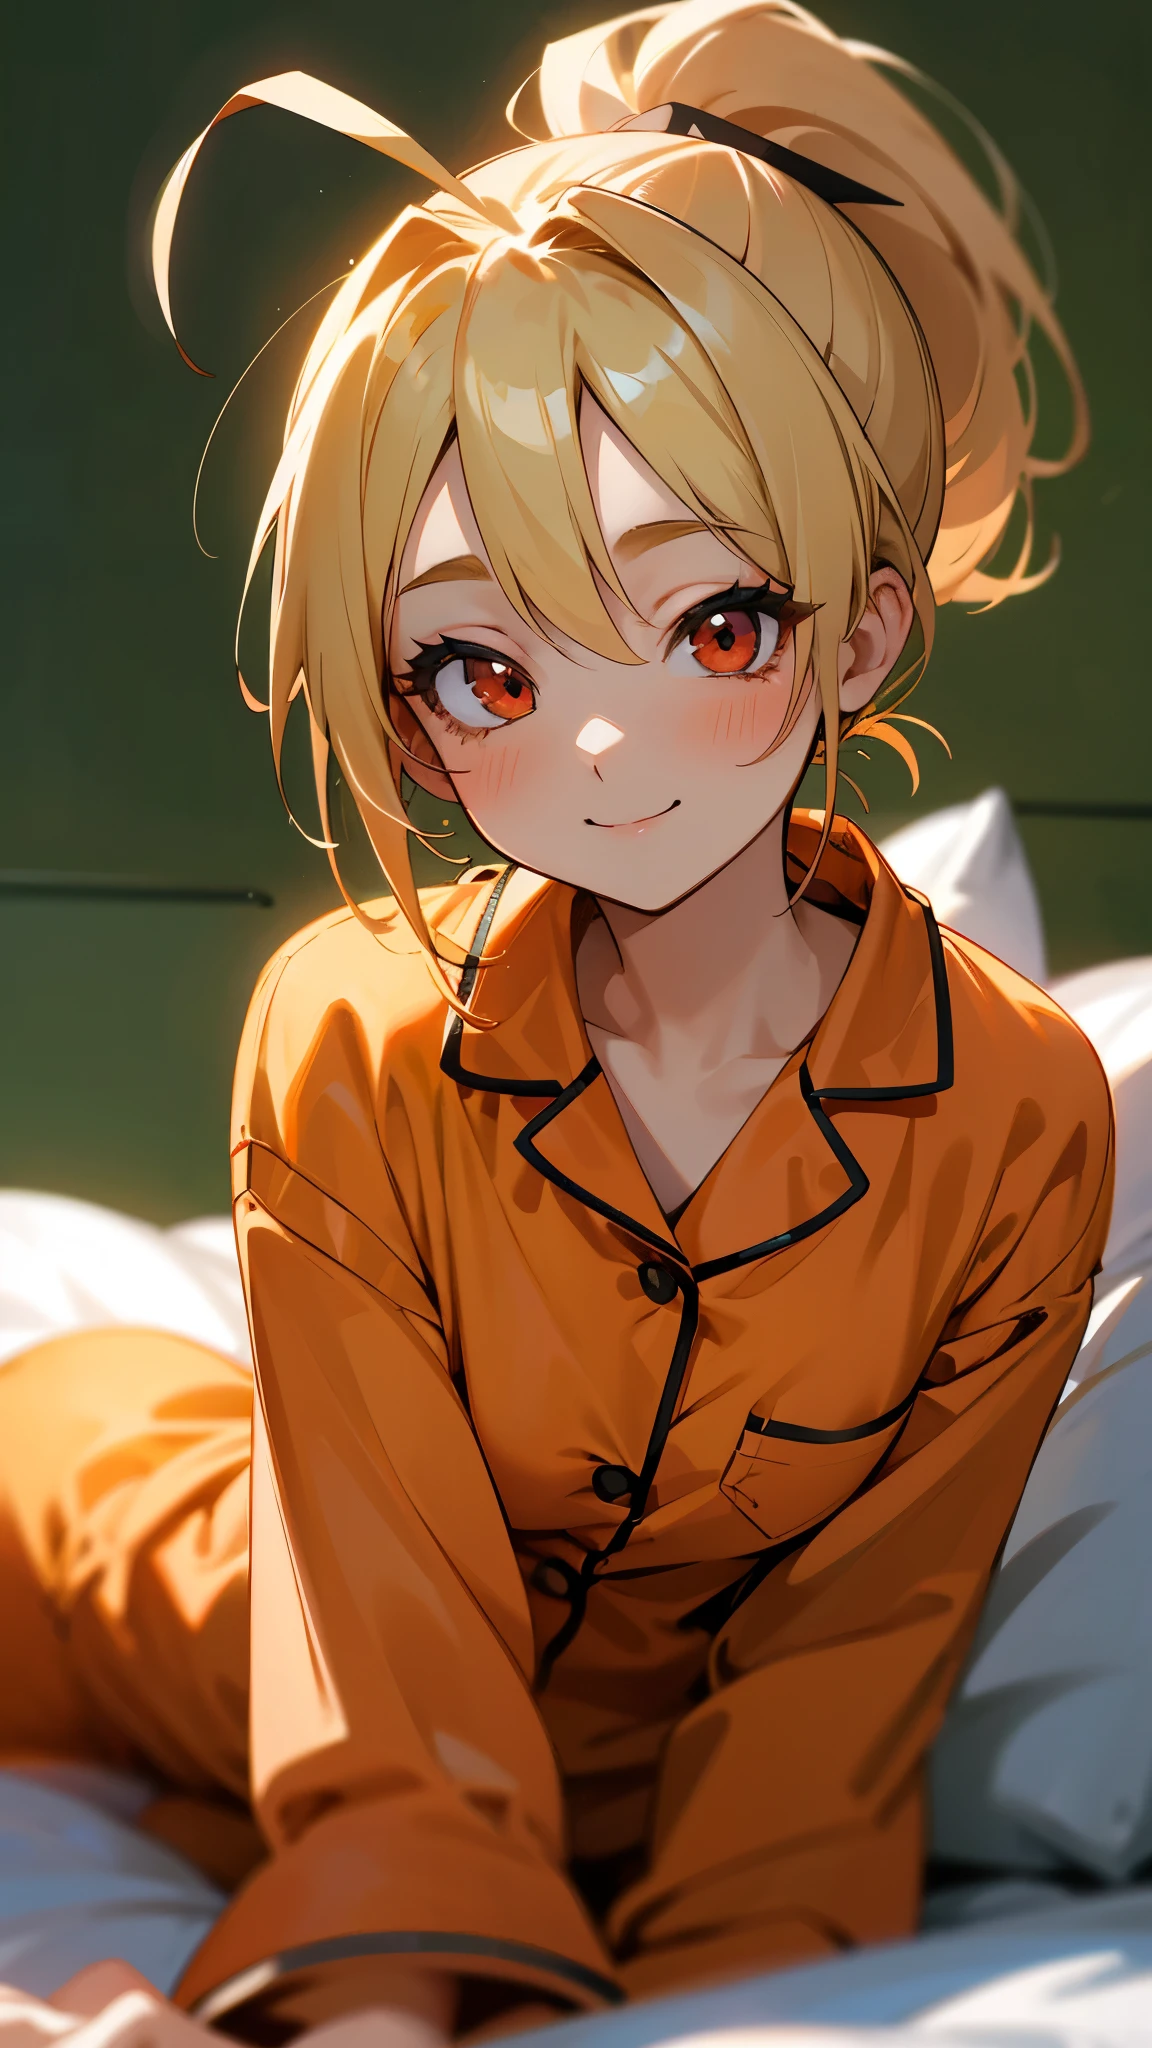 18-летняя девушка сидит на кровати、Один、Картины в стиле аниме、в пижаме、блондинка с хвостиком、ахоге、красивые красные глаза、улыбка、улыбка、Со стороны、Мягкая текстура пижамы、лицо крупным планом、Цвета на основе зеленого и оранжевого、Размытие фона、Глубина нарисованных границ